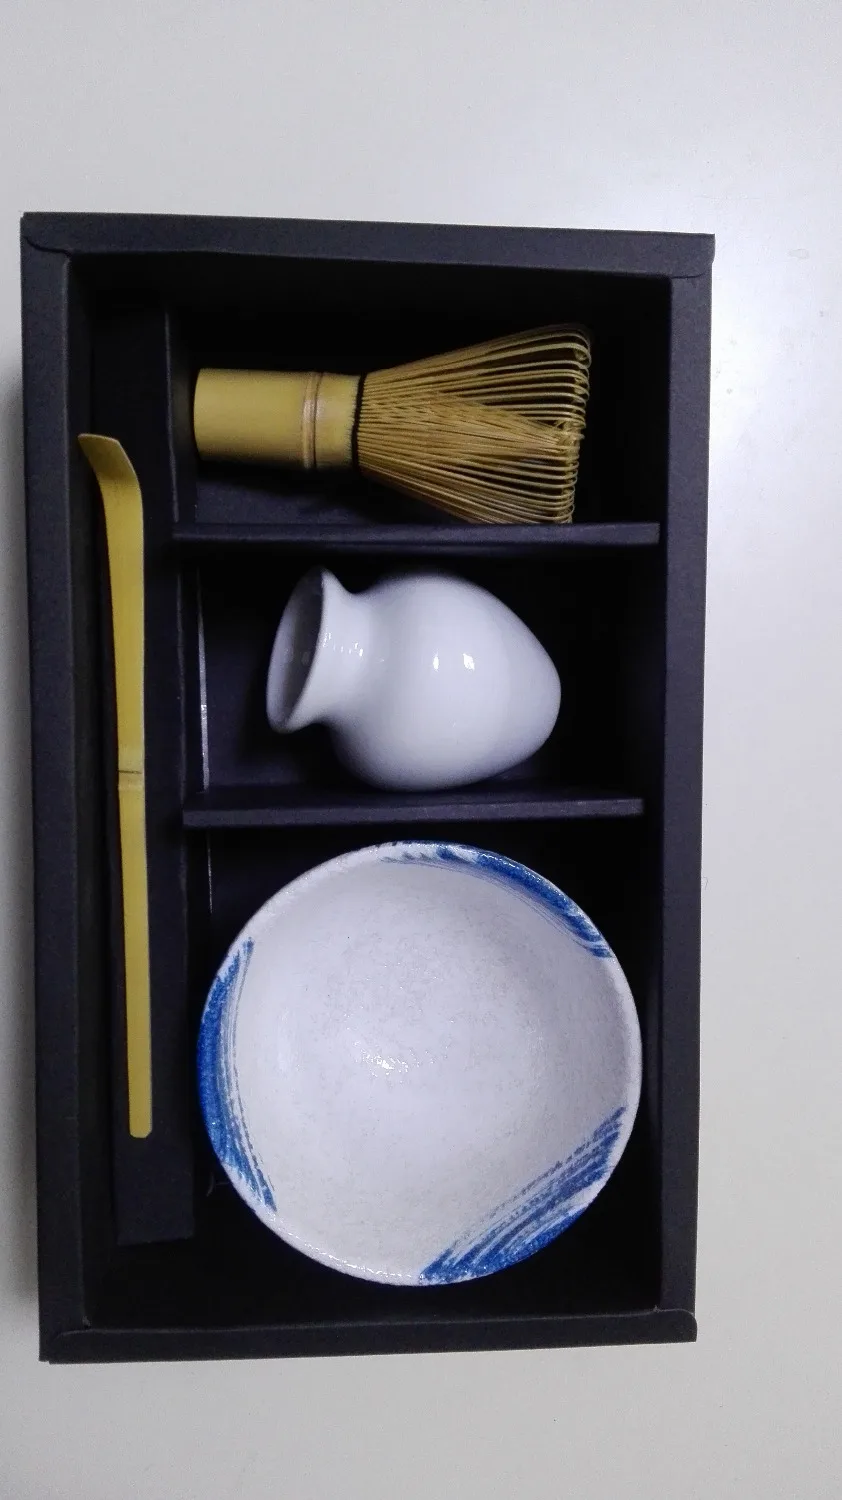 Японская маття чаша венчик совок и белый венчик держатель 4/шт Подарочный набор японский чайный церемония Набор для маття традиционные инструменты для приготовления маття